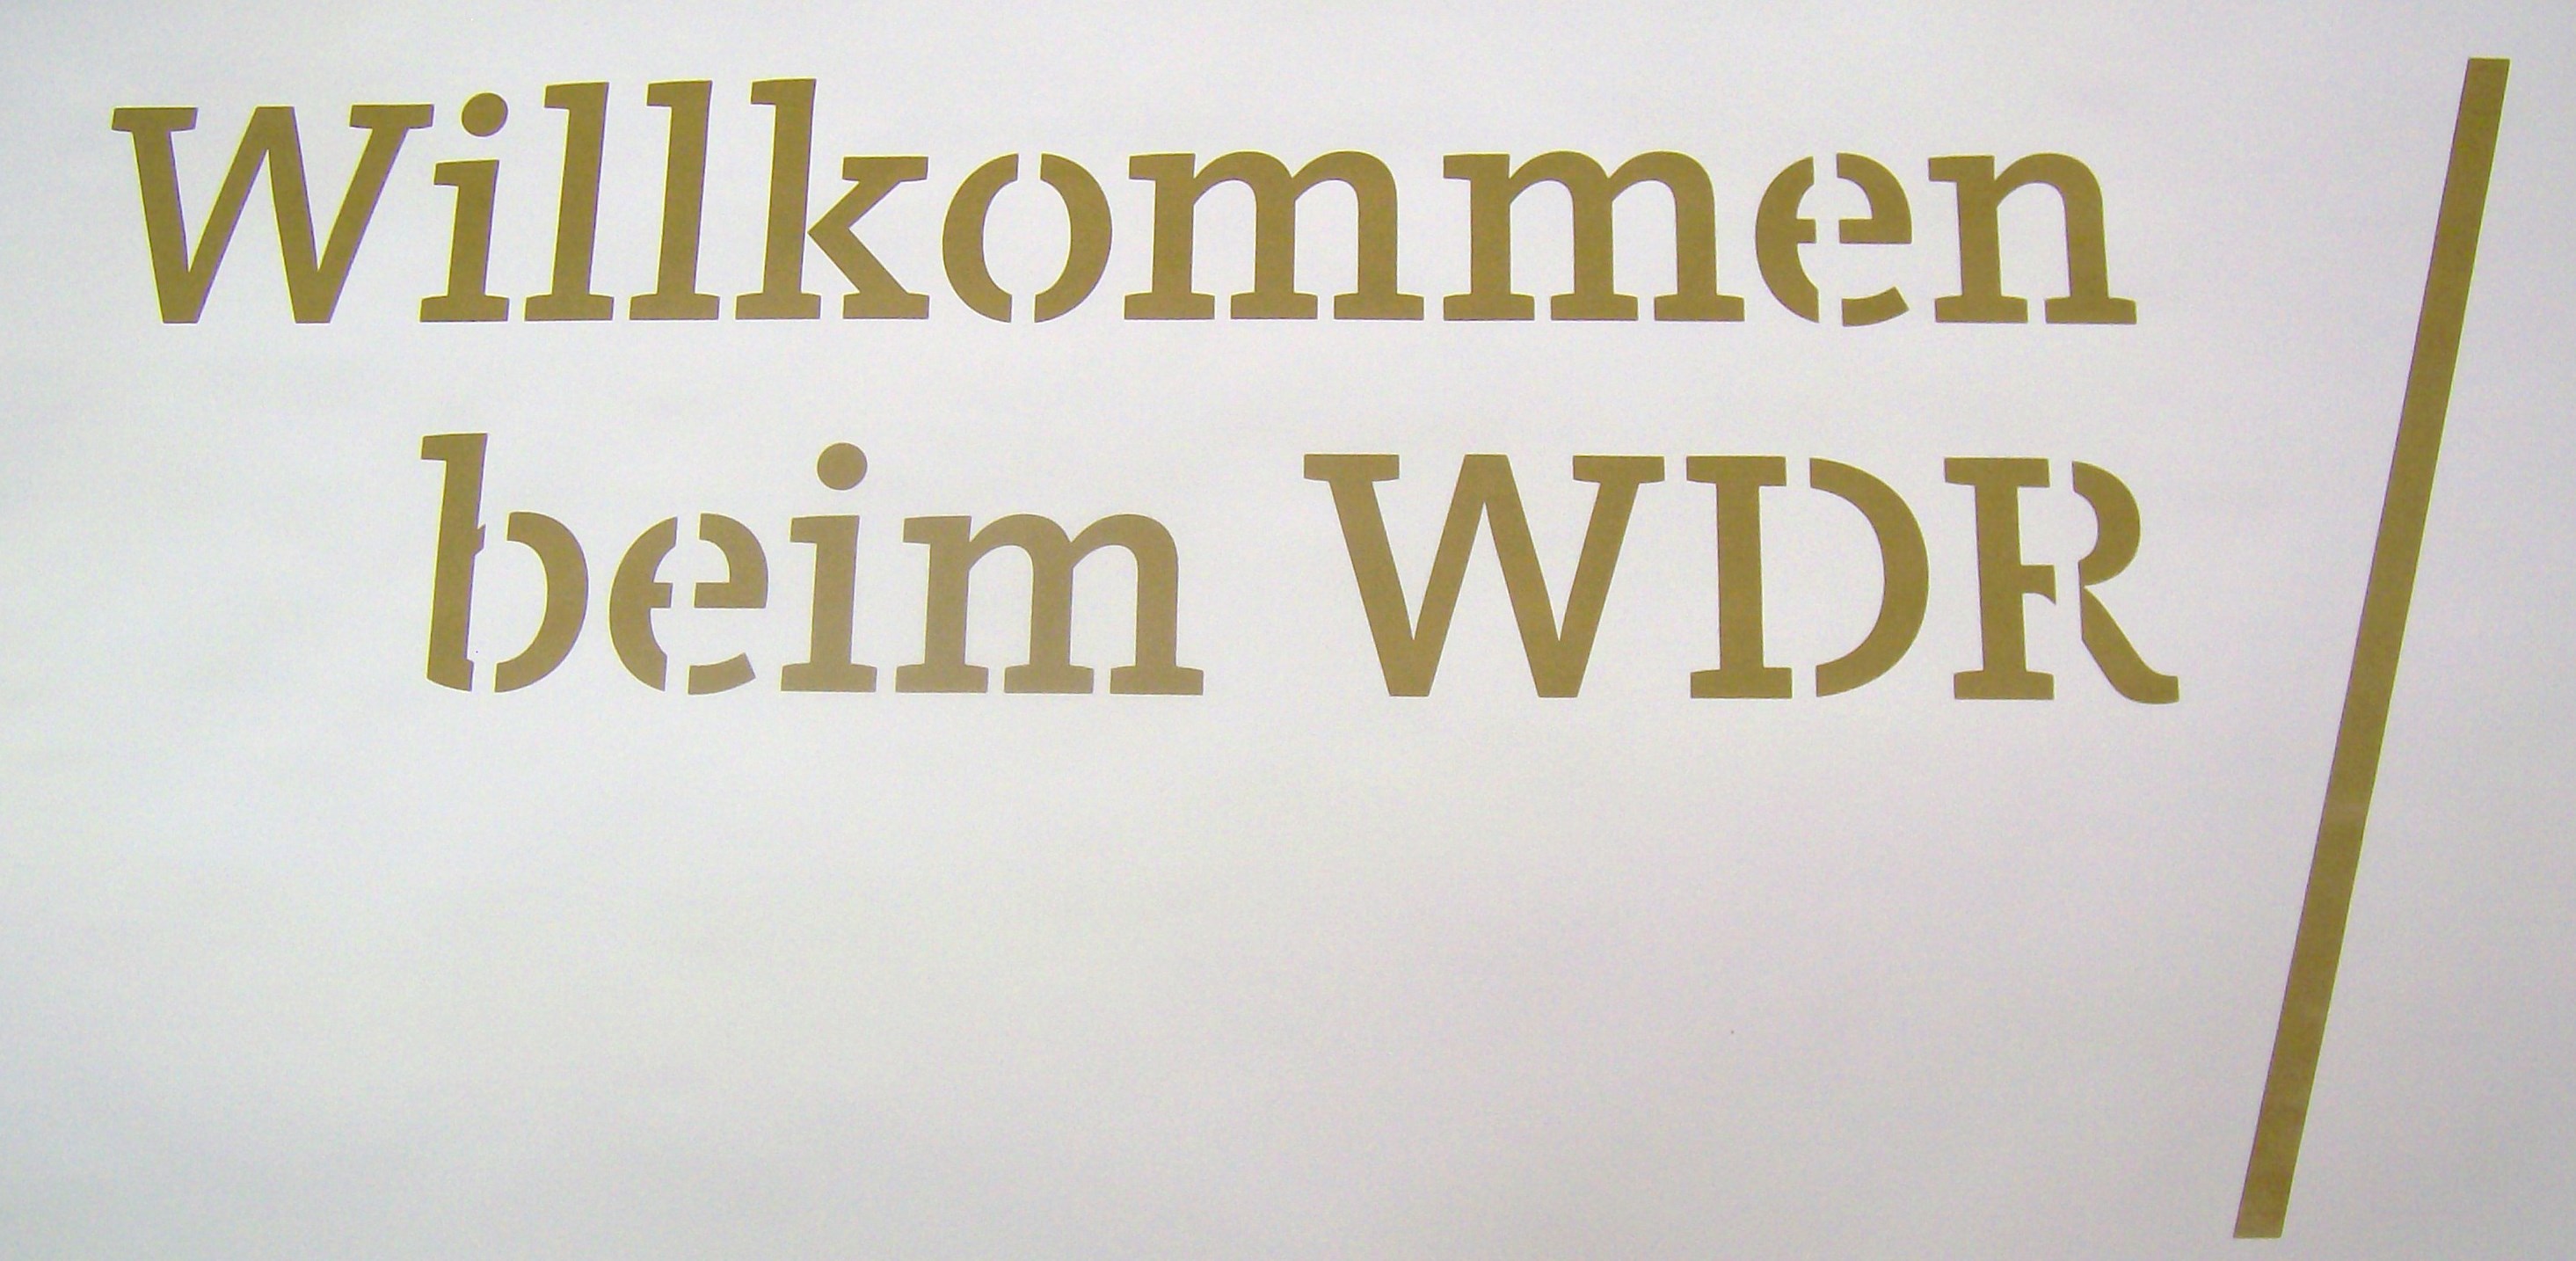 Willkommen_beim_WDR